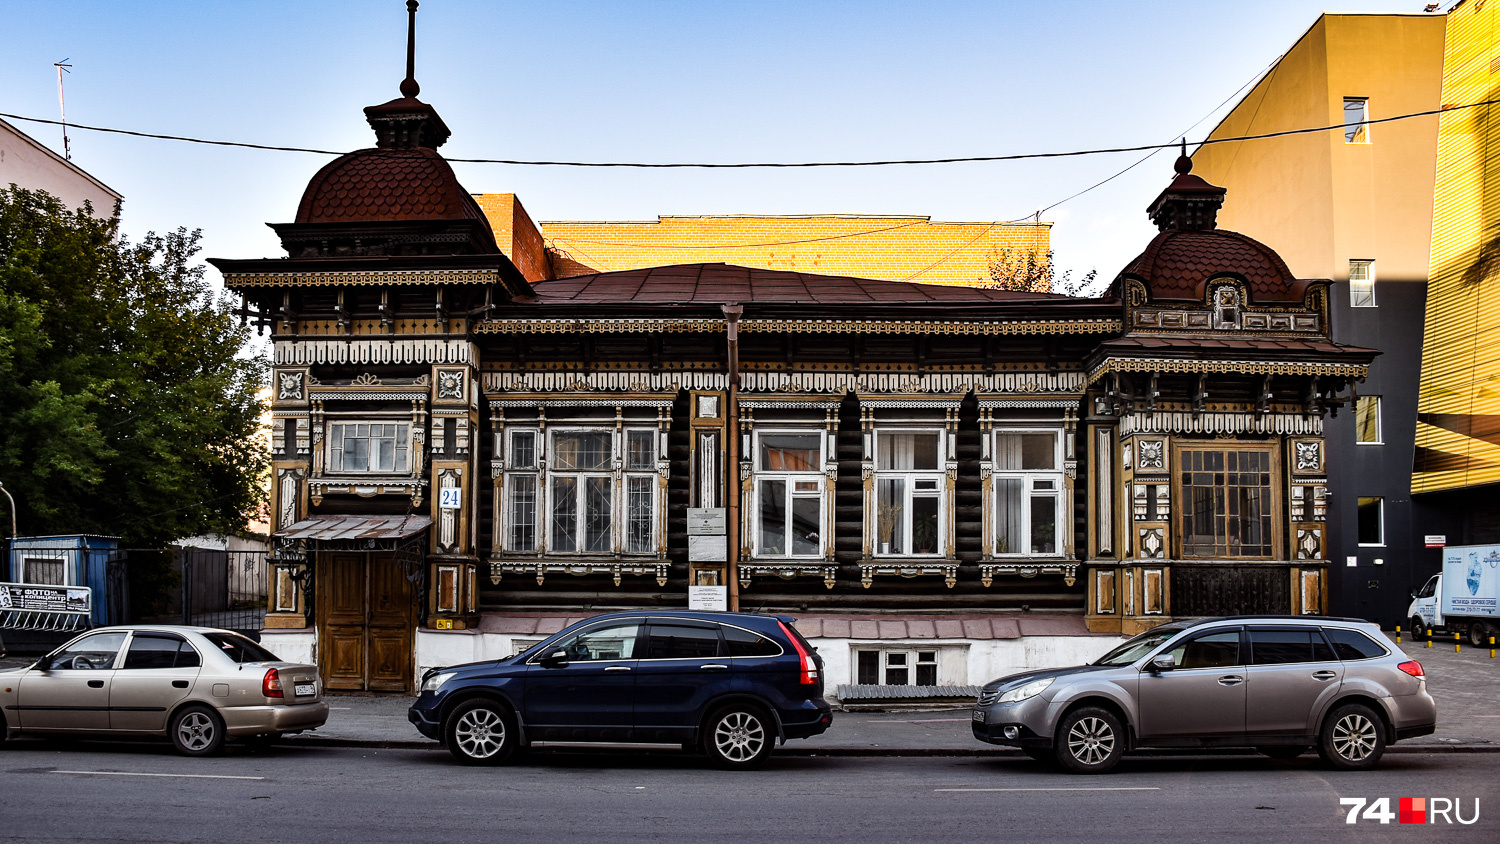 Центр Екатеринбурга — это не только конструктивизм, но и вот такие симпатичные старые дома